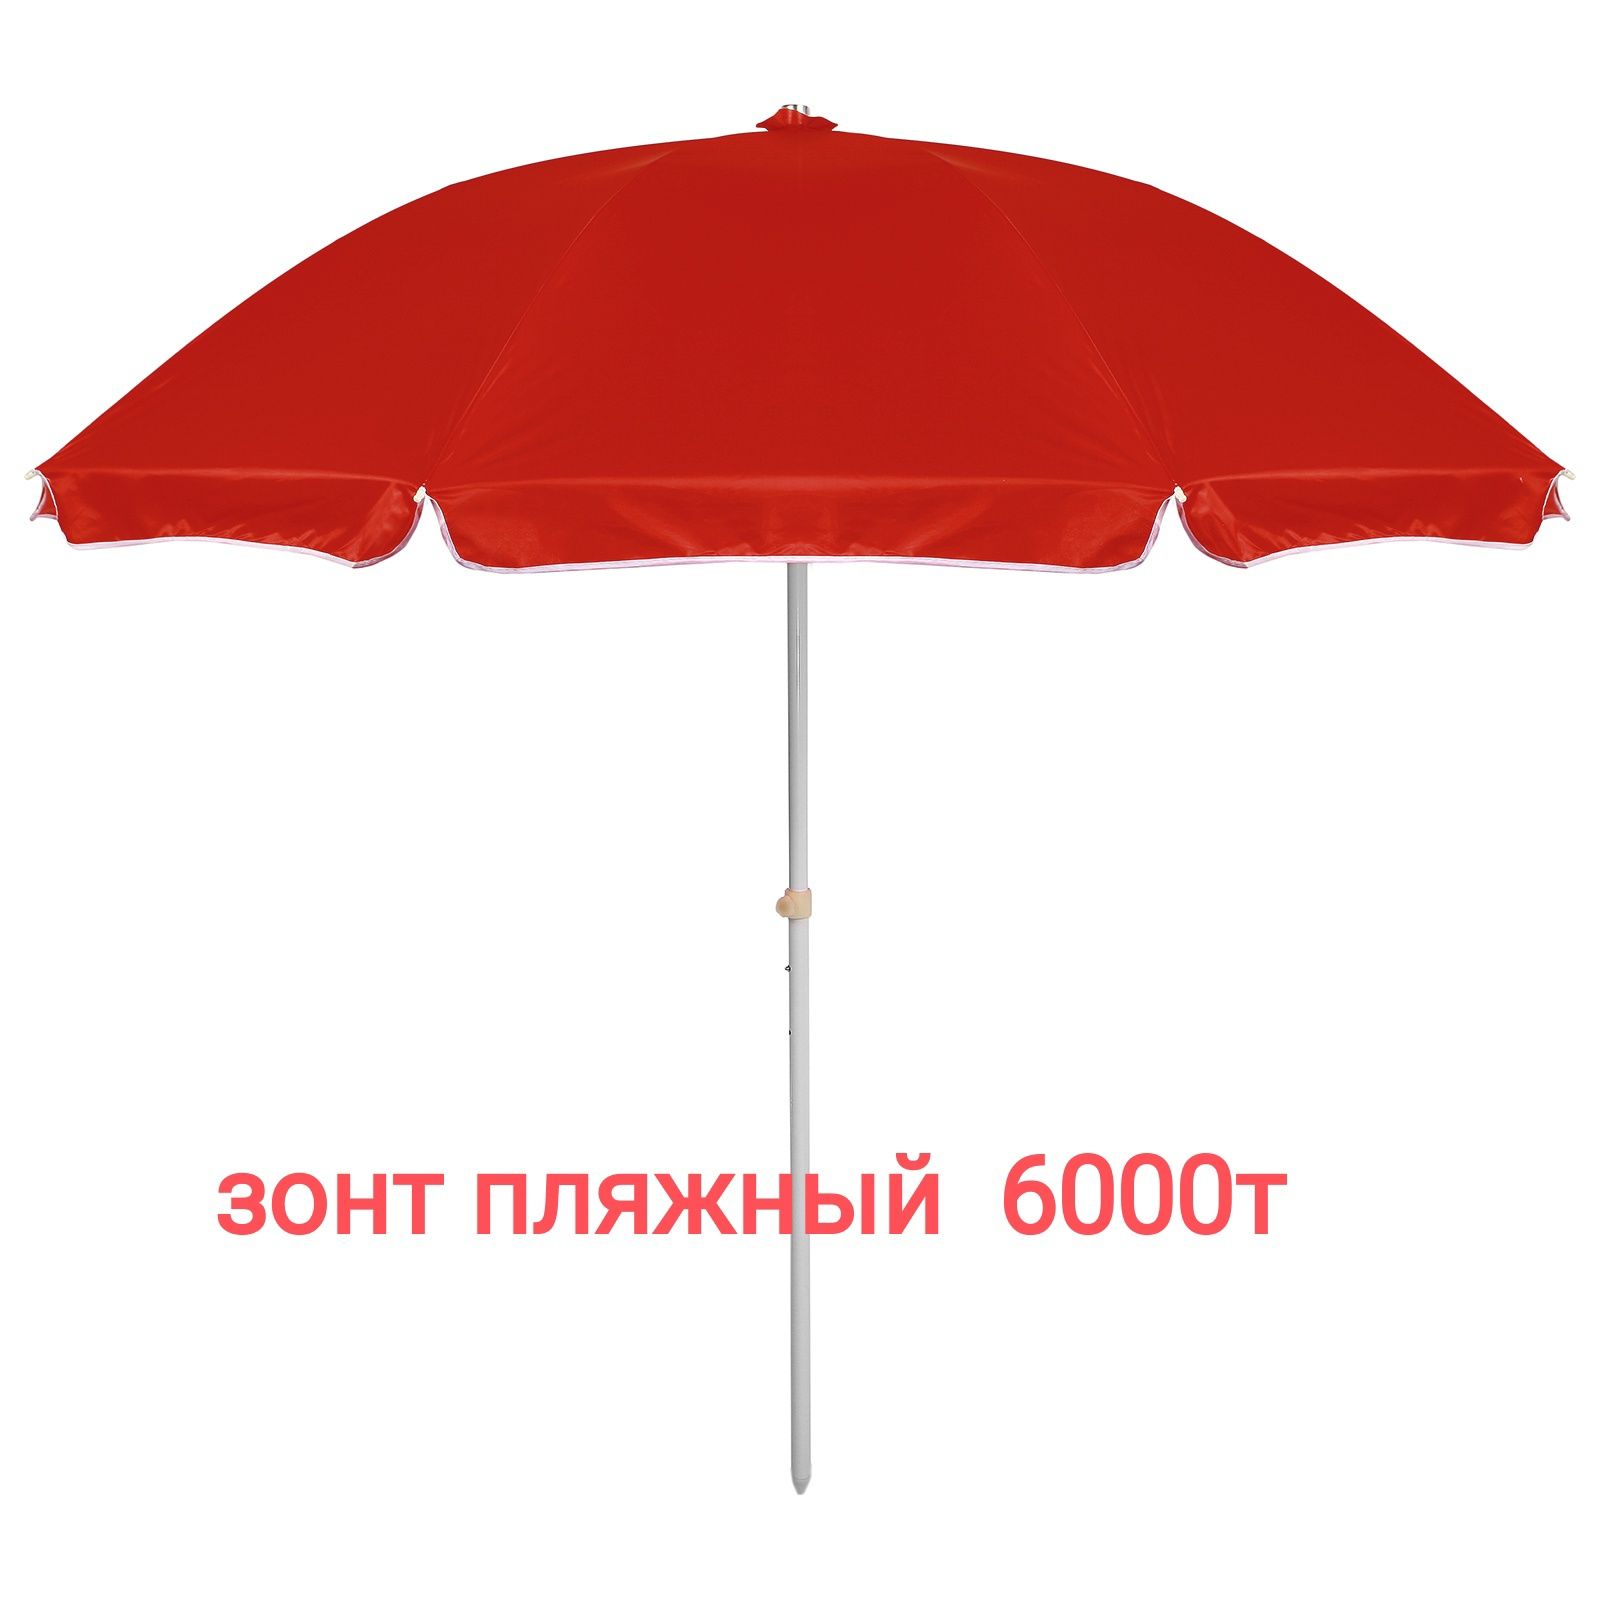 қолшатырлар. шатыр.палатки зонты навес